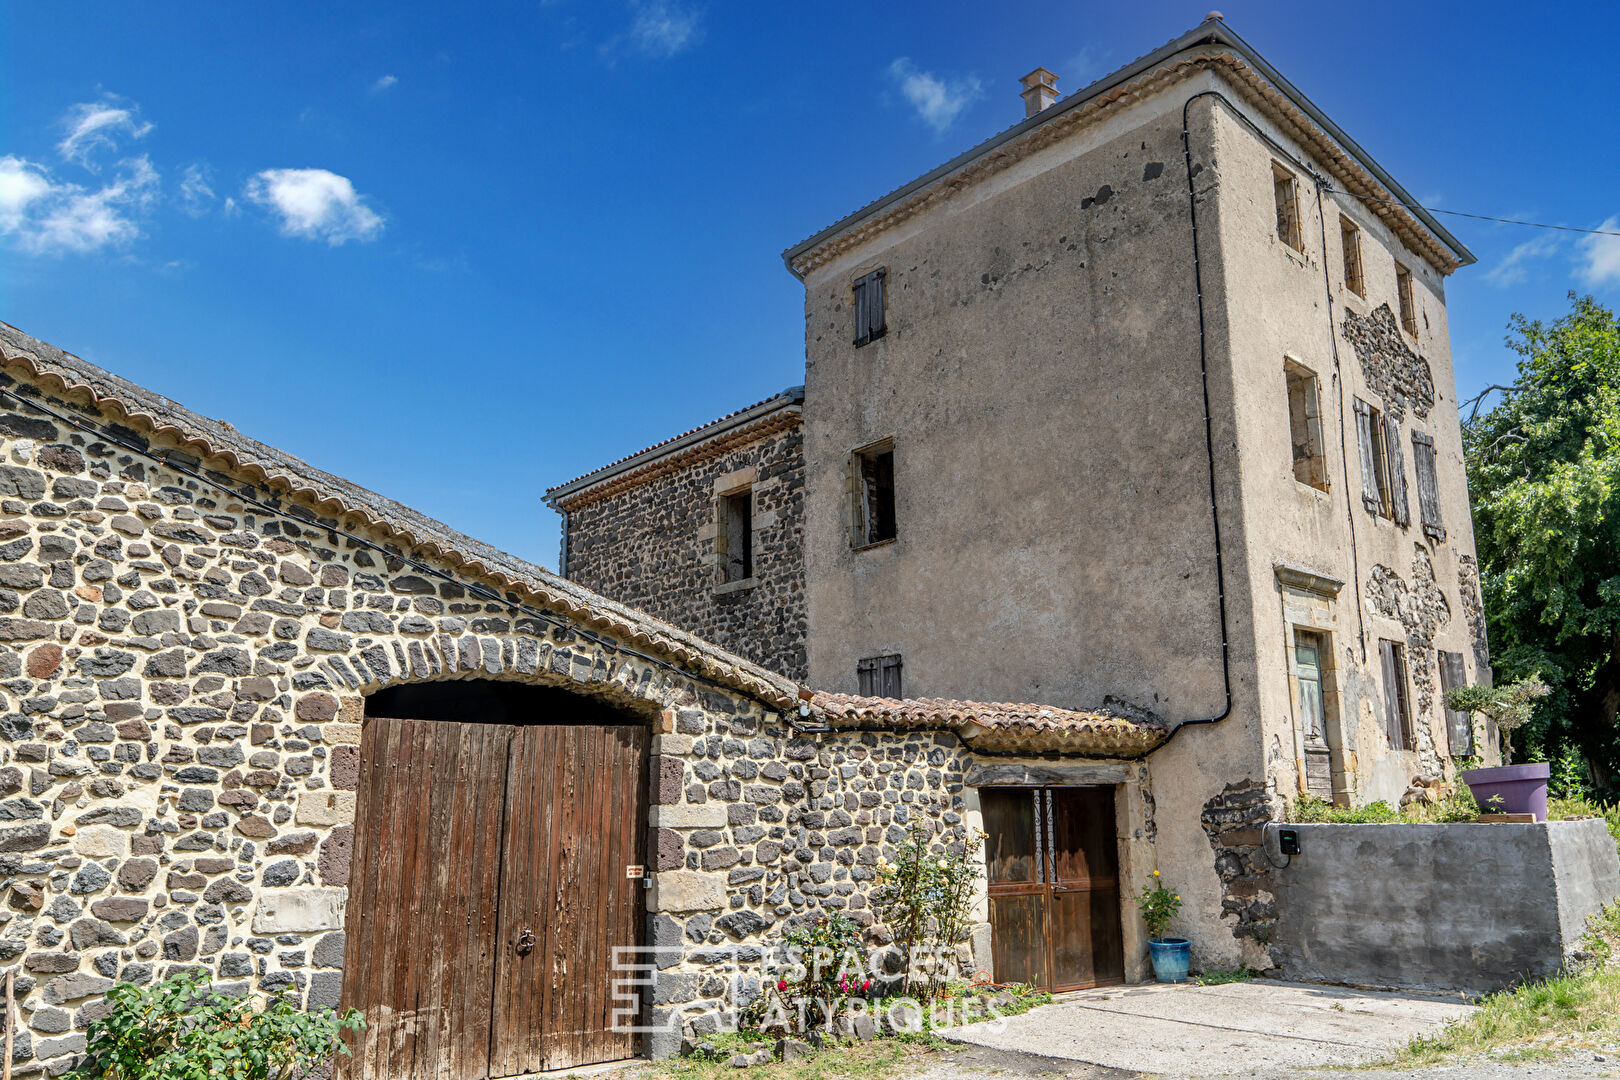 Property near Privas in Ardèche with 28ha